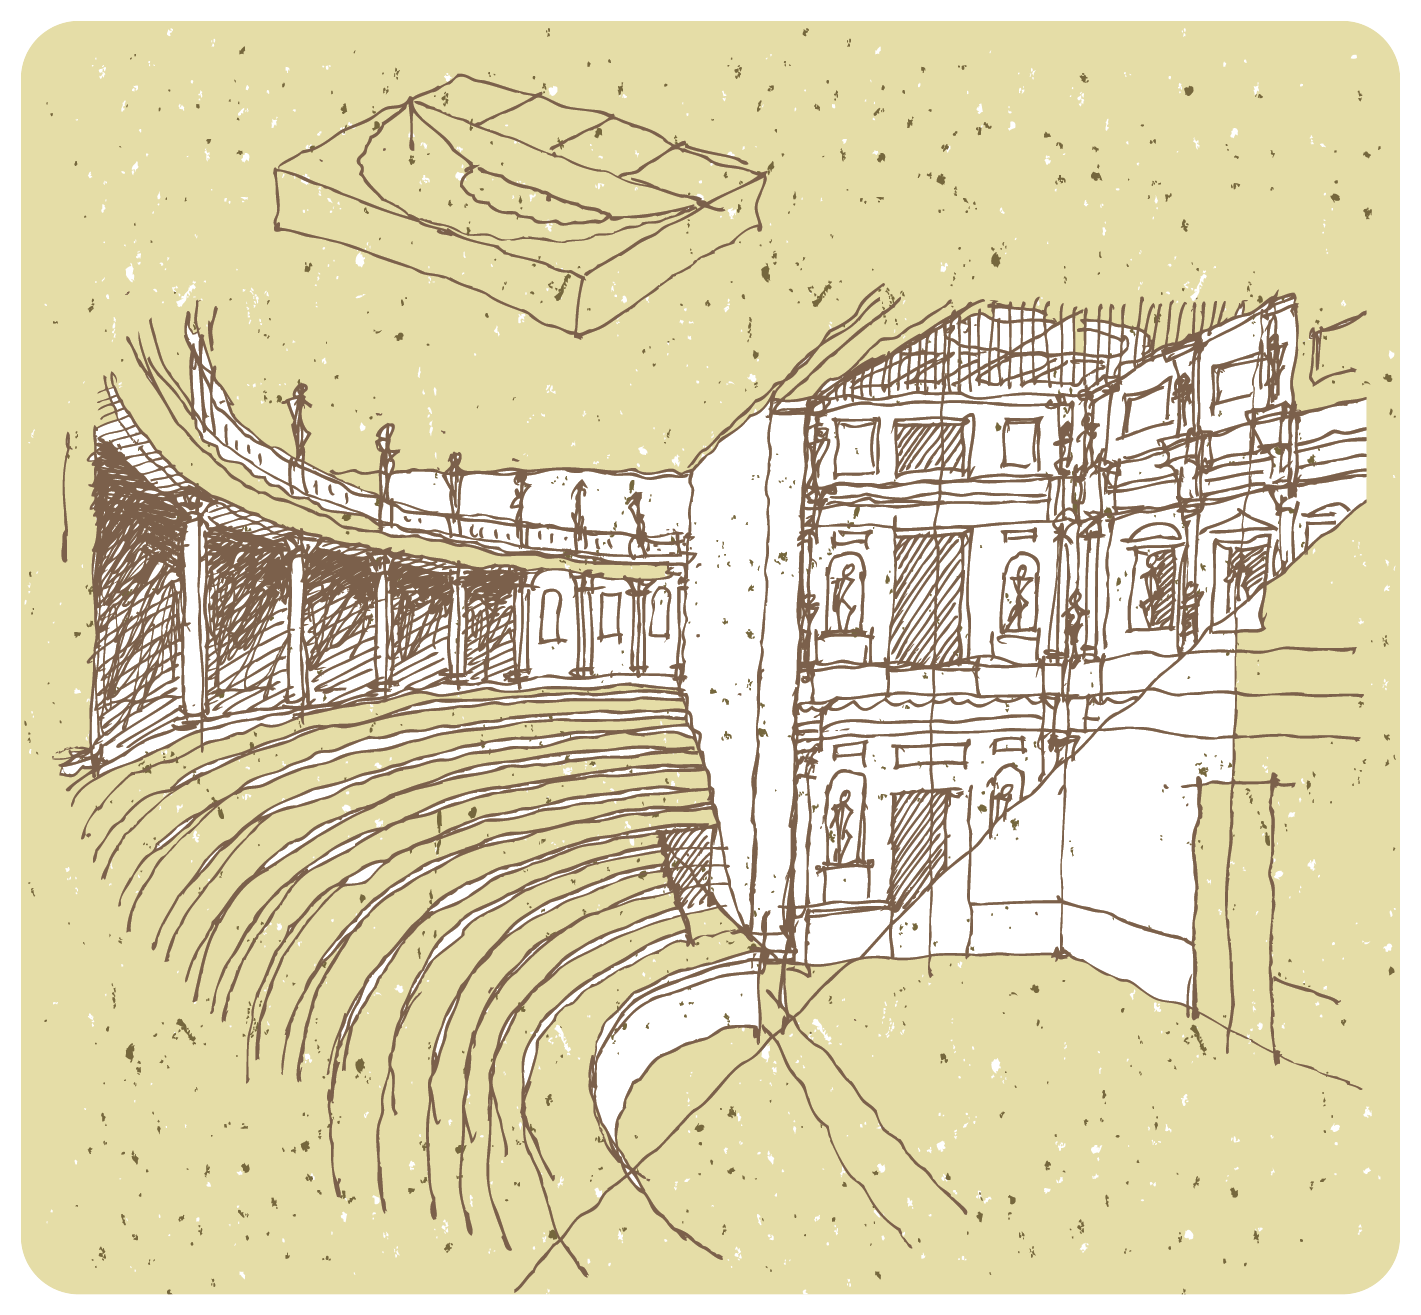 Ilustração. Rascunho em preto e branco que apresenta o interior de um anfiteatro com assento em arquibancada com linhas curvas à esquerda e uma construção que possui diferentes pisos e janelas com formas arqueadas à direita.